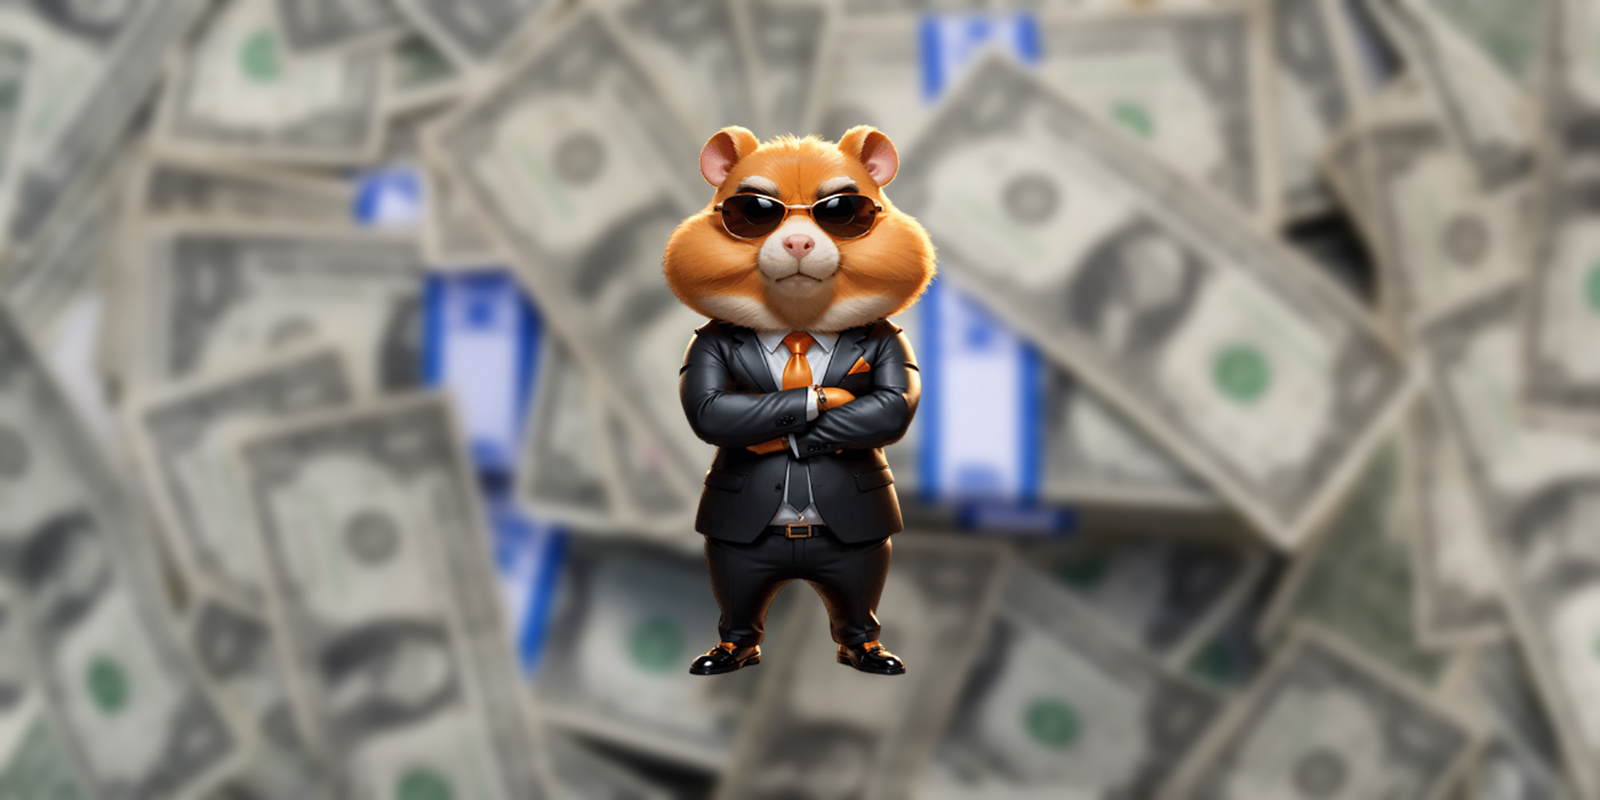 Прелистинг токена Hamster Kombat пройдёт на бирже OKX уже 1 августа